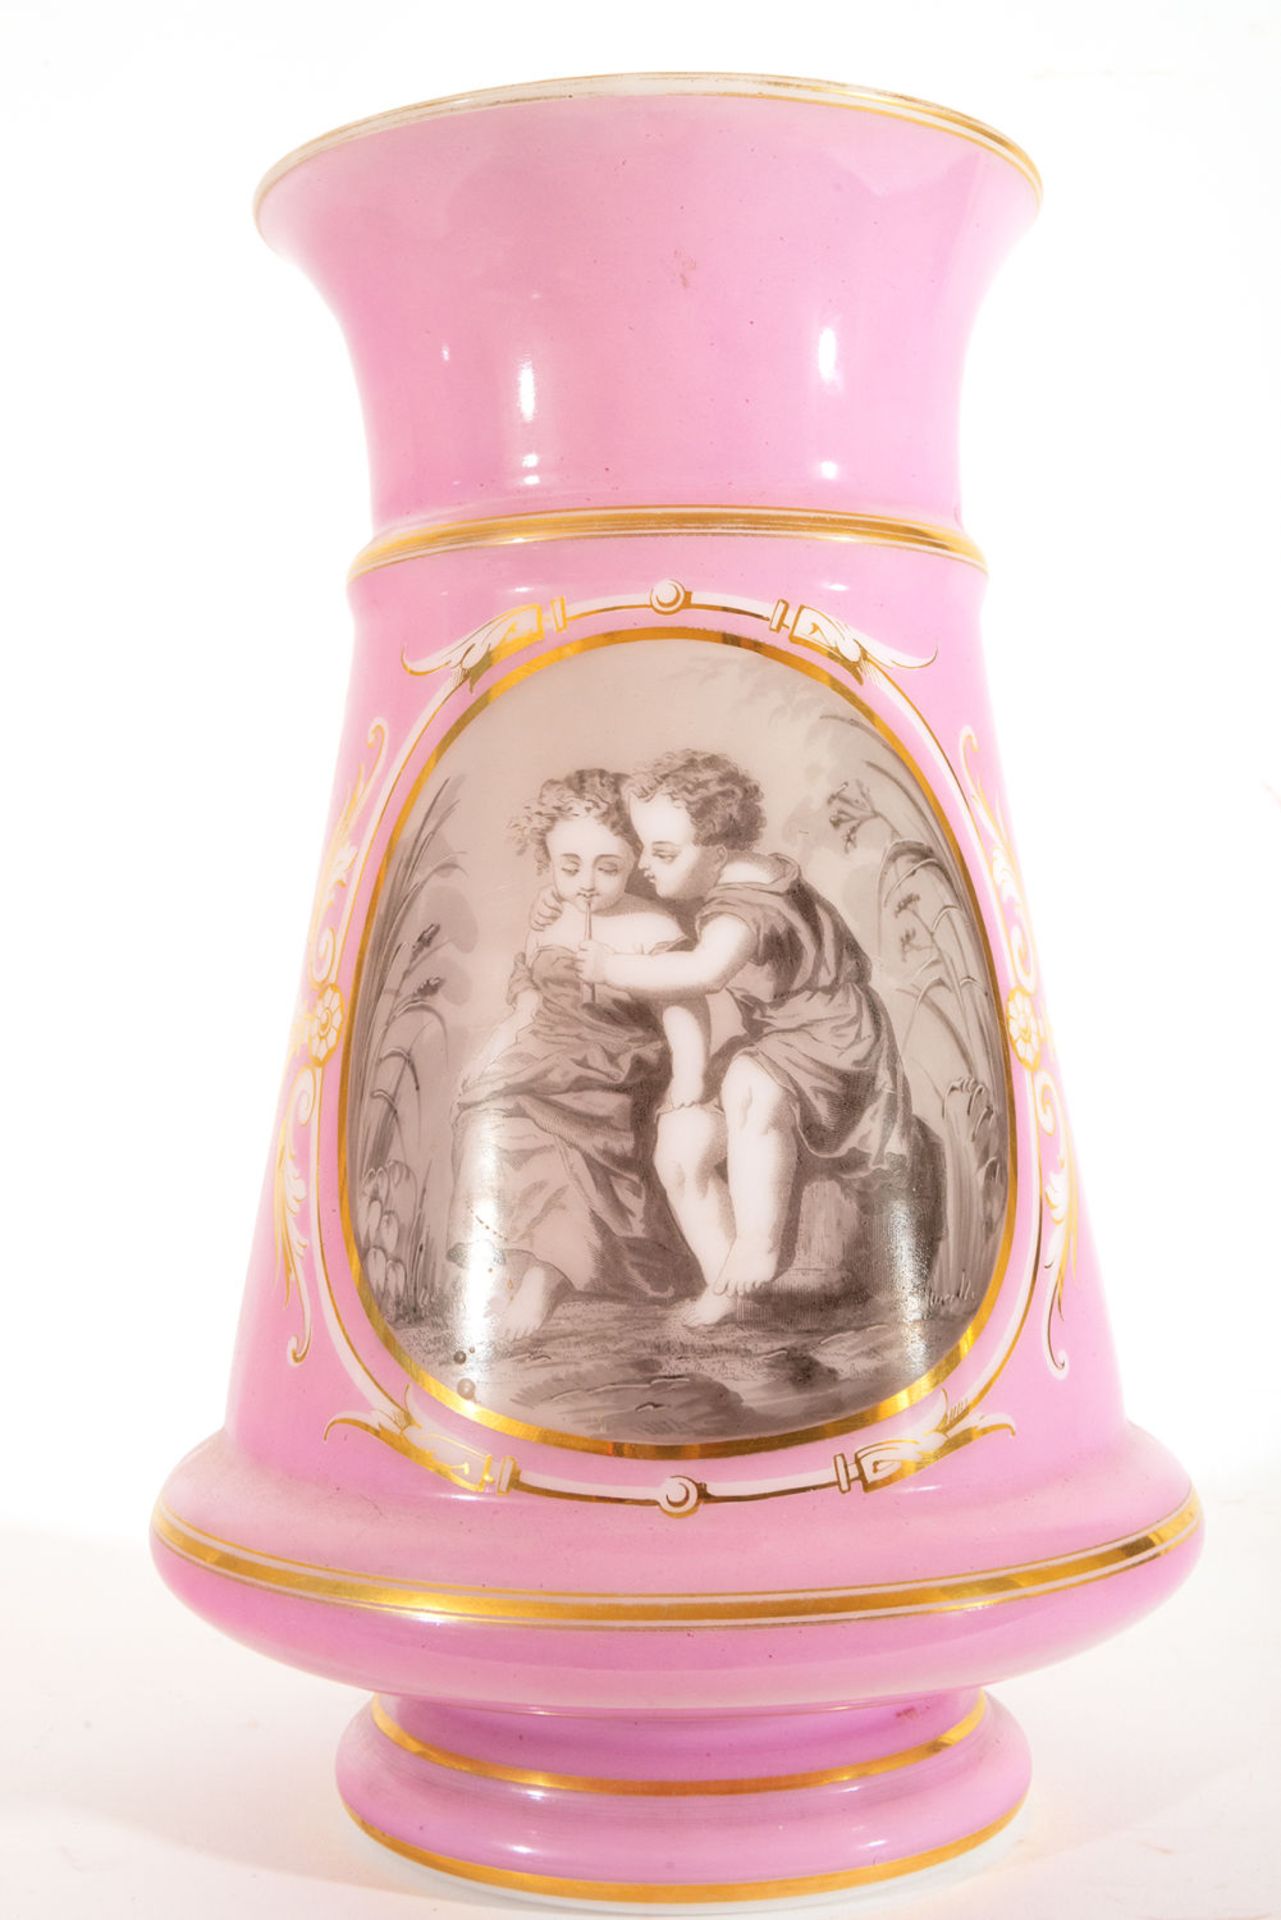 Pair of Opaline Vases with Romantic Scenes, 19th century - Bild 3 aus 10